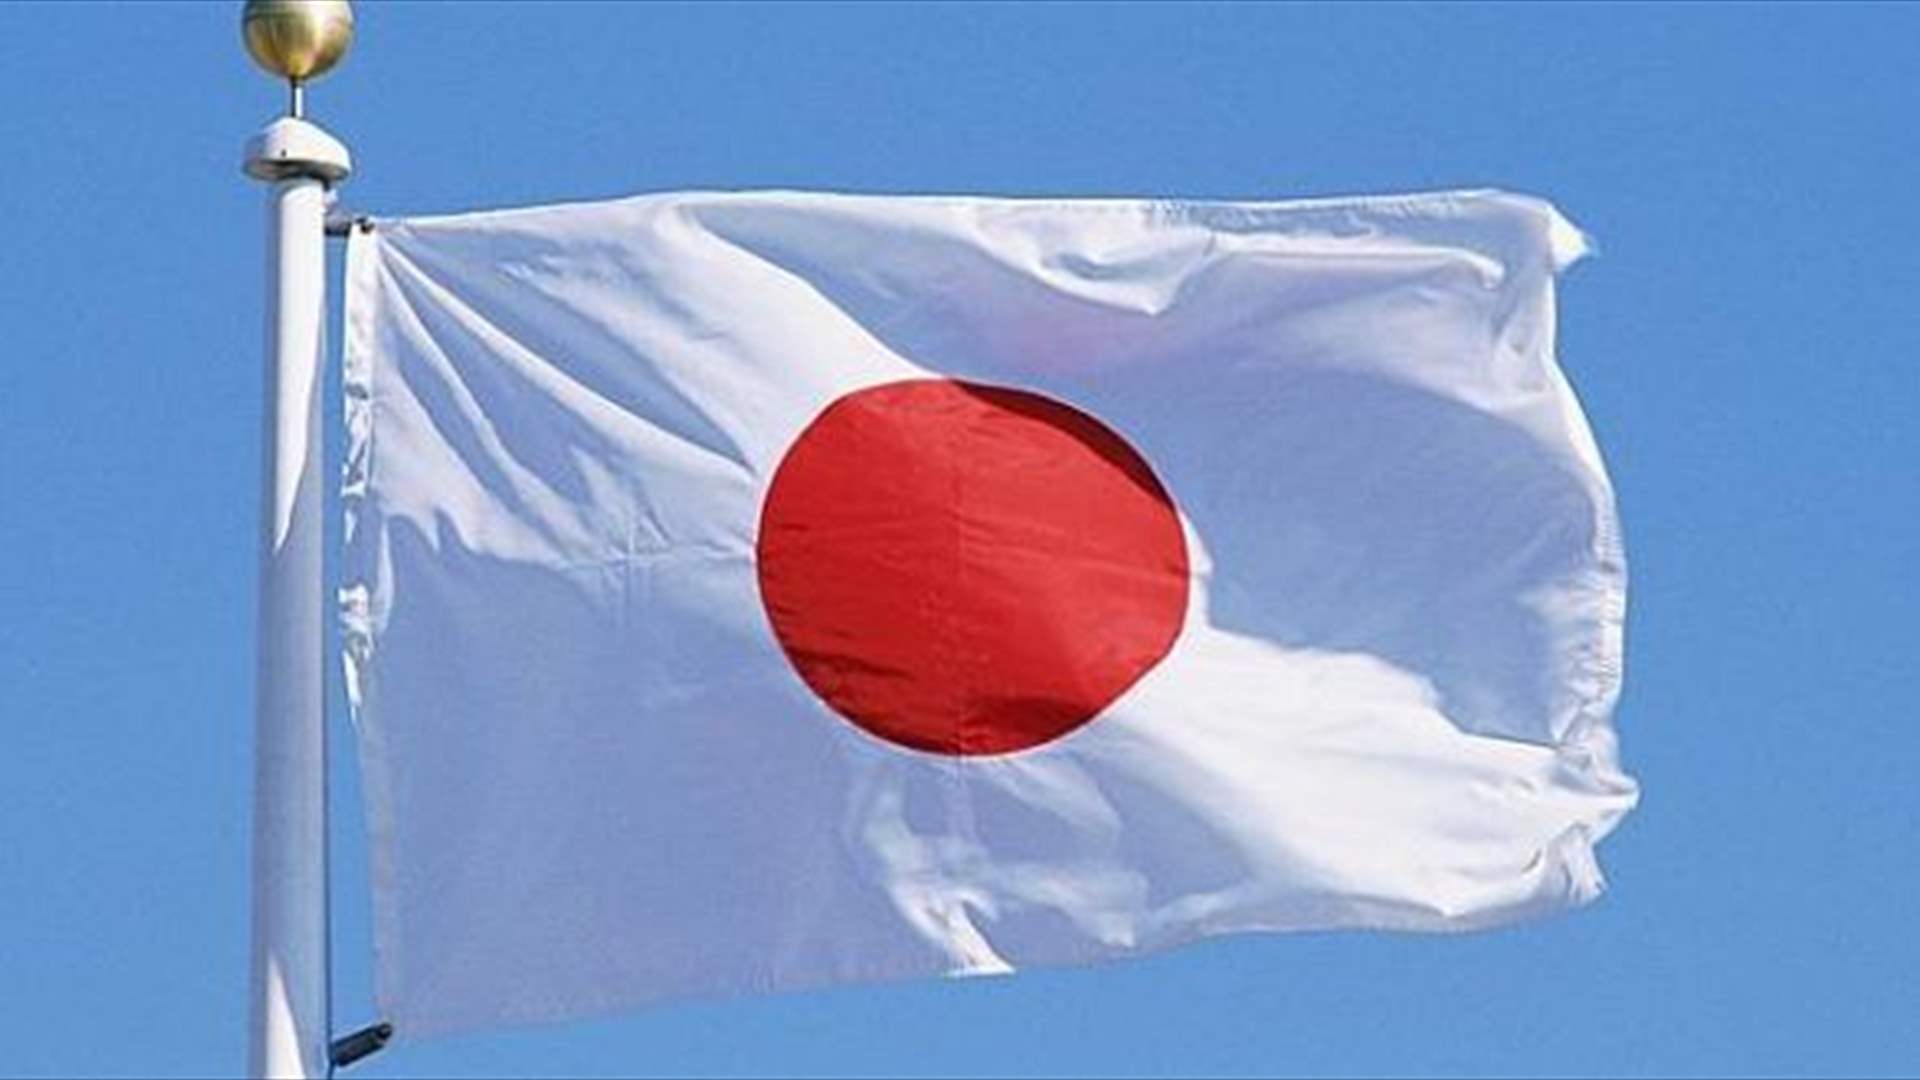 مختل يقتل إمرأة وشرطيين في اليابان